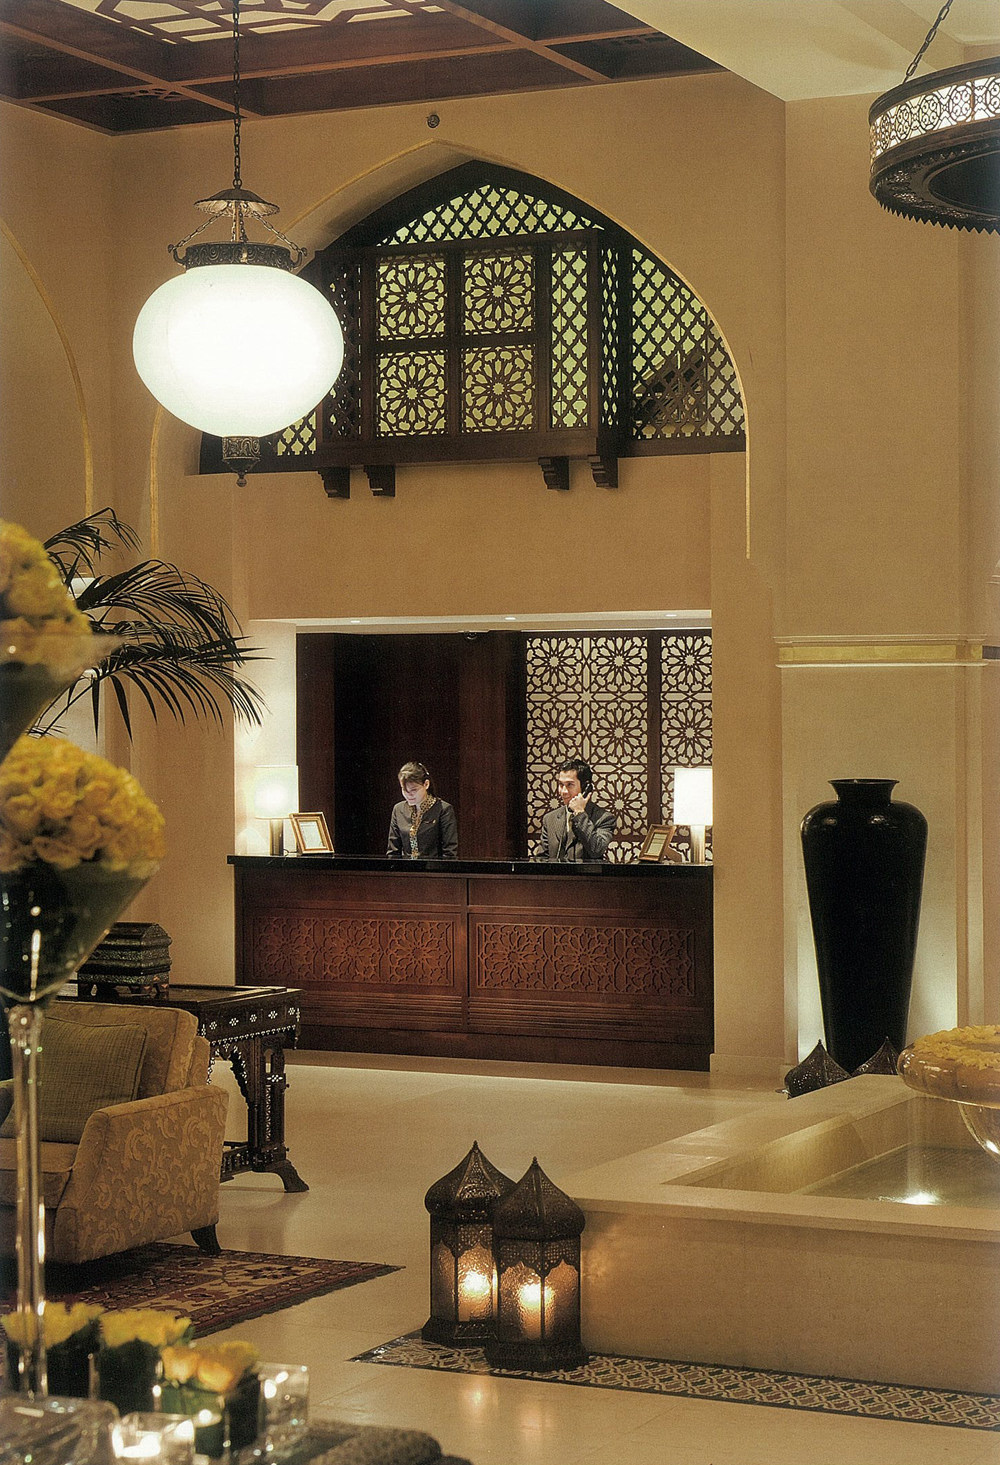 迪拜古镇宫殿酒店(分享书籍扫描)_img-225103017-0009.jpg